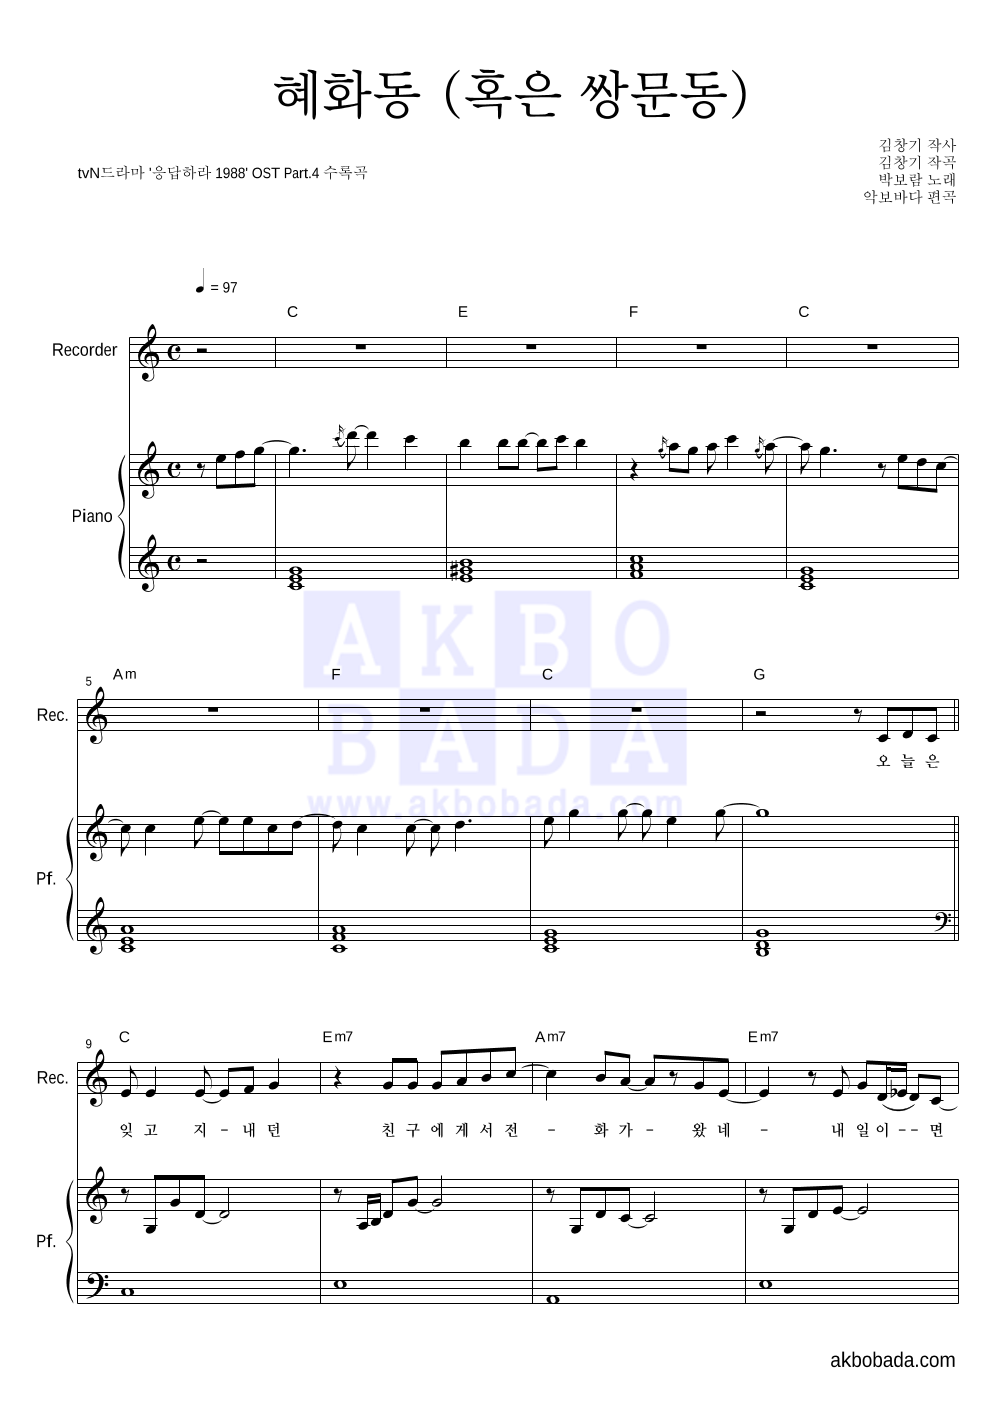 박보람 - 혜화동 (혹은 쌍문동) 리코더&피아노 악보 